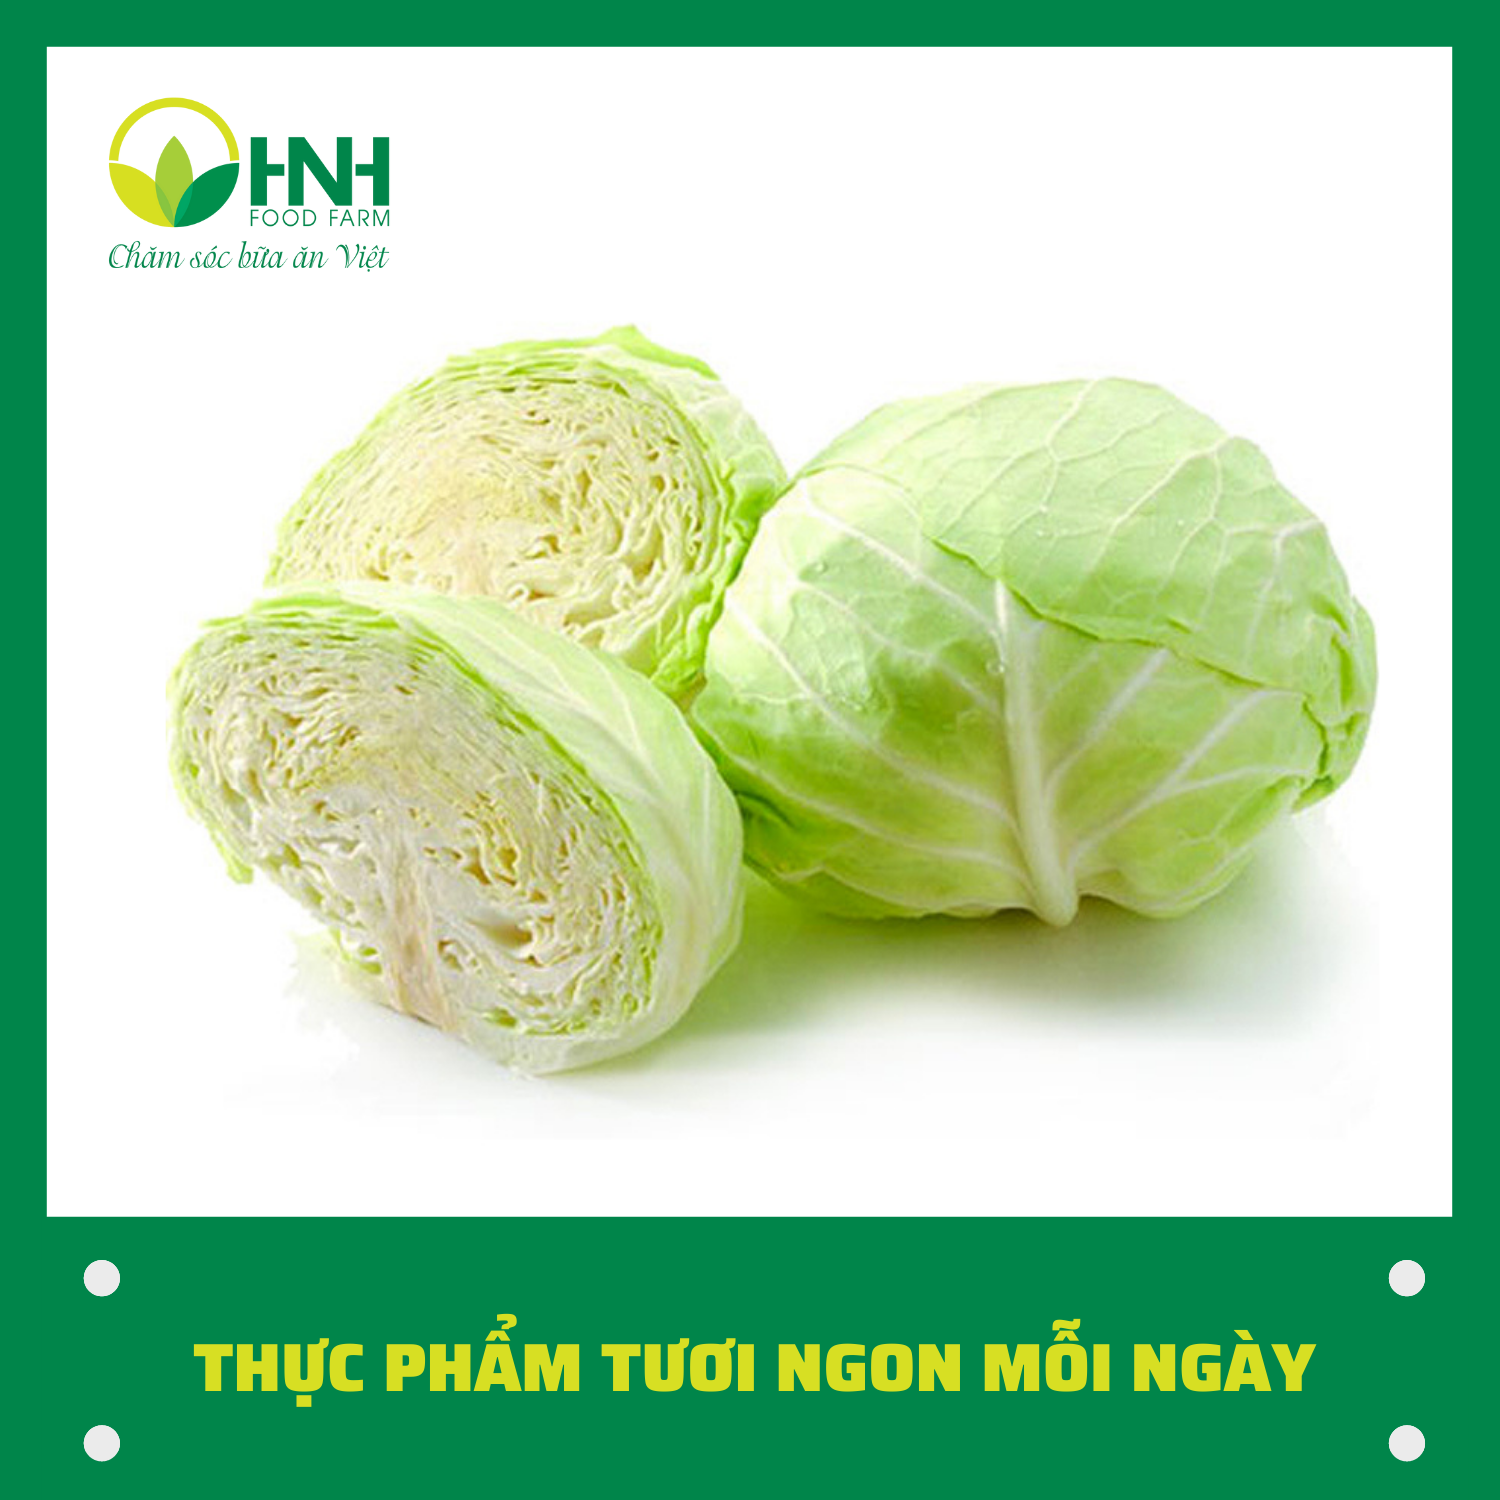 CHỈ GIAO HÀ NỘI Cải bắp sạch ngon trợ giá mùa dịch - HNH Food Farm